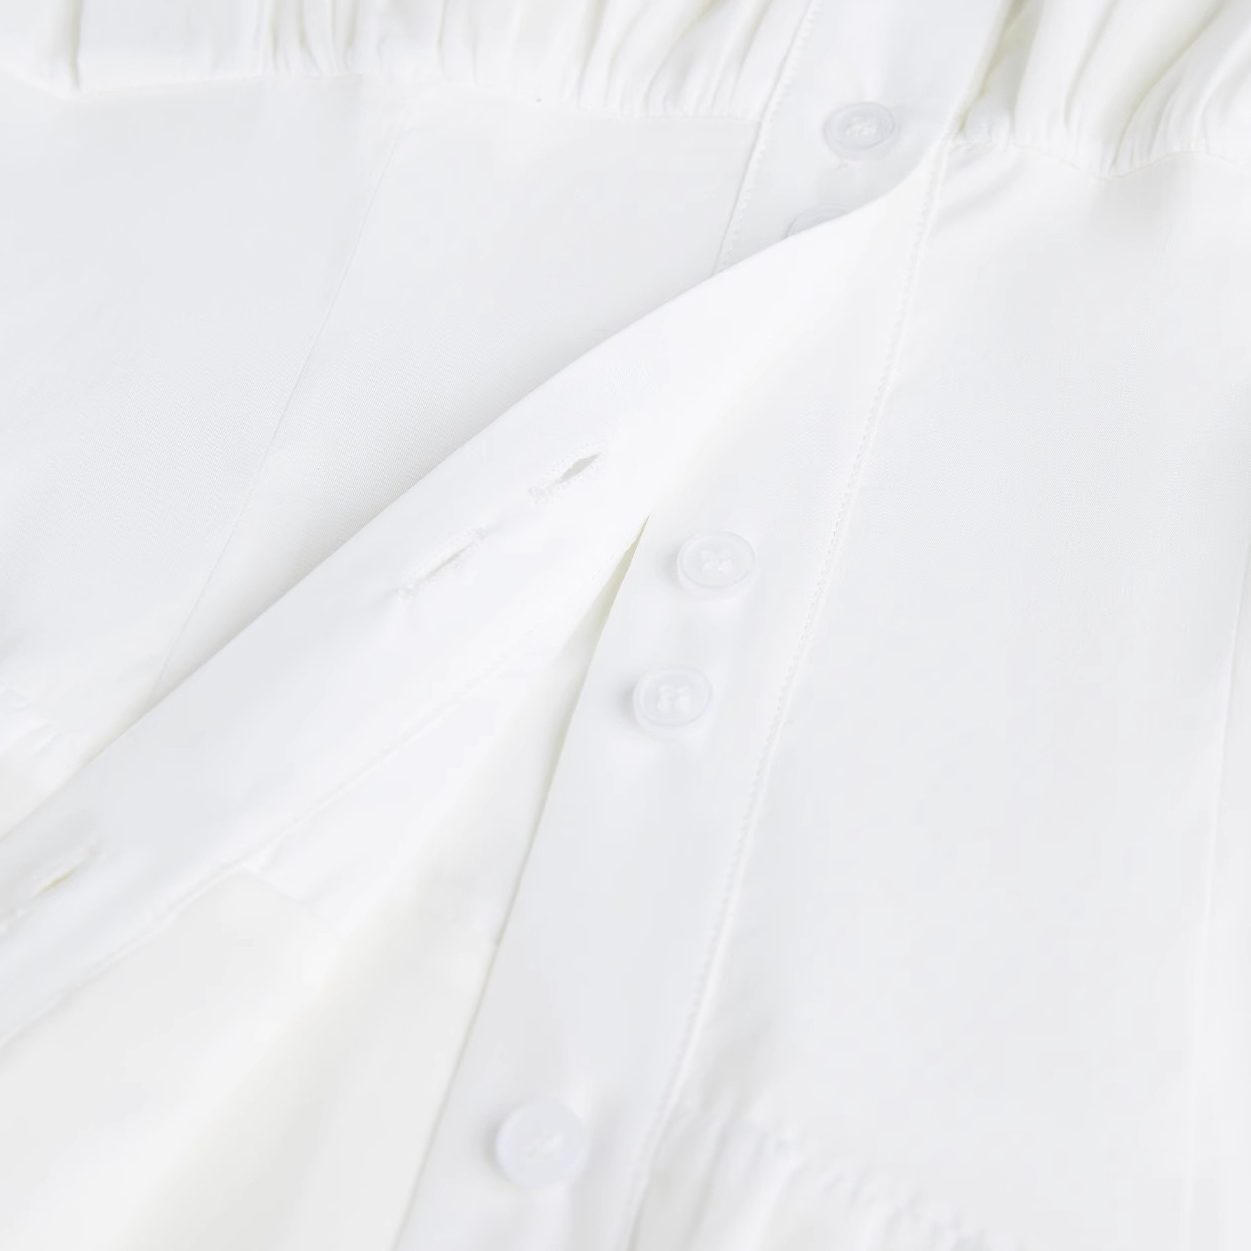 Designers de vestidos femininos com irregularidade de camisa branca (6)